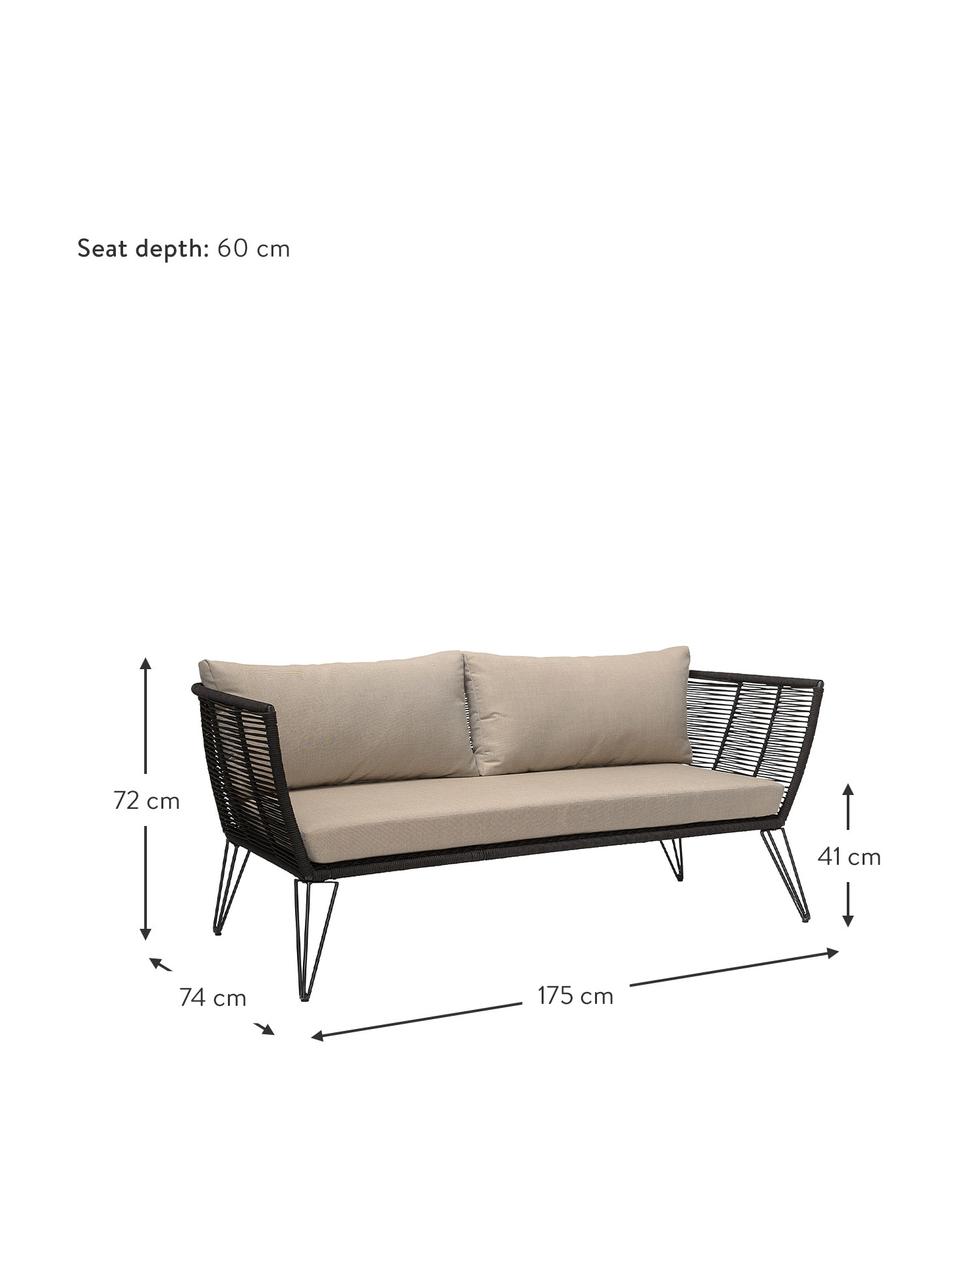 Garten-Loungesofa Mundo mit Kunststoff-Geflecht (2-Sitzer), Gestell: Metall, pulverbeschichtet, Sitzfläche: Polyethylen, Bezug: Polyester, Beige, B 175 x T 74 cm